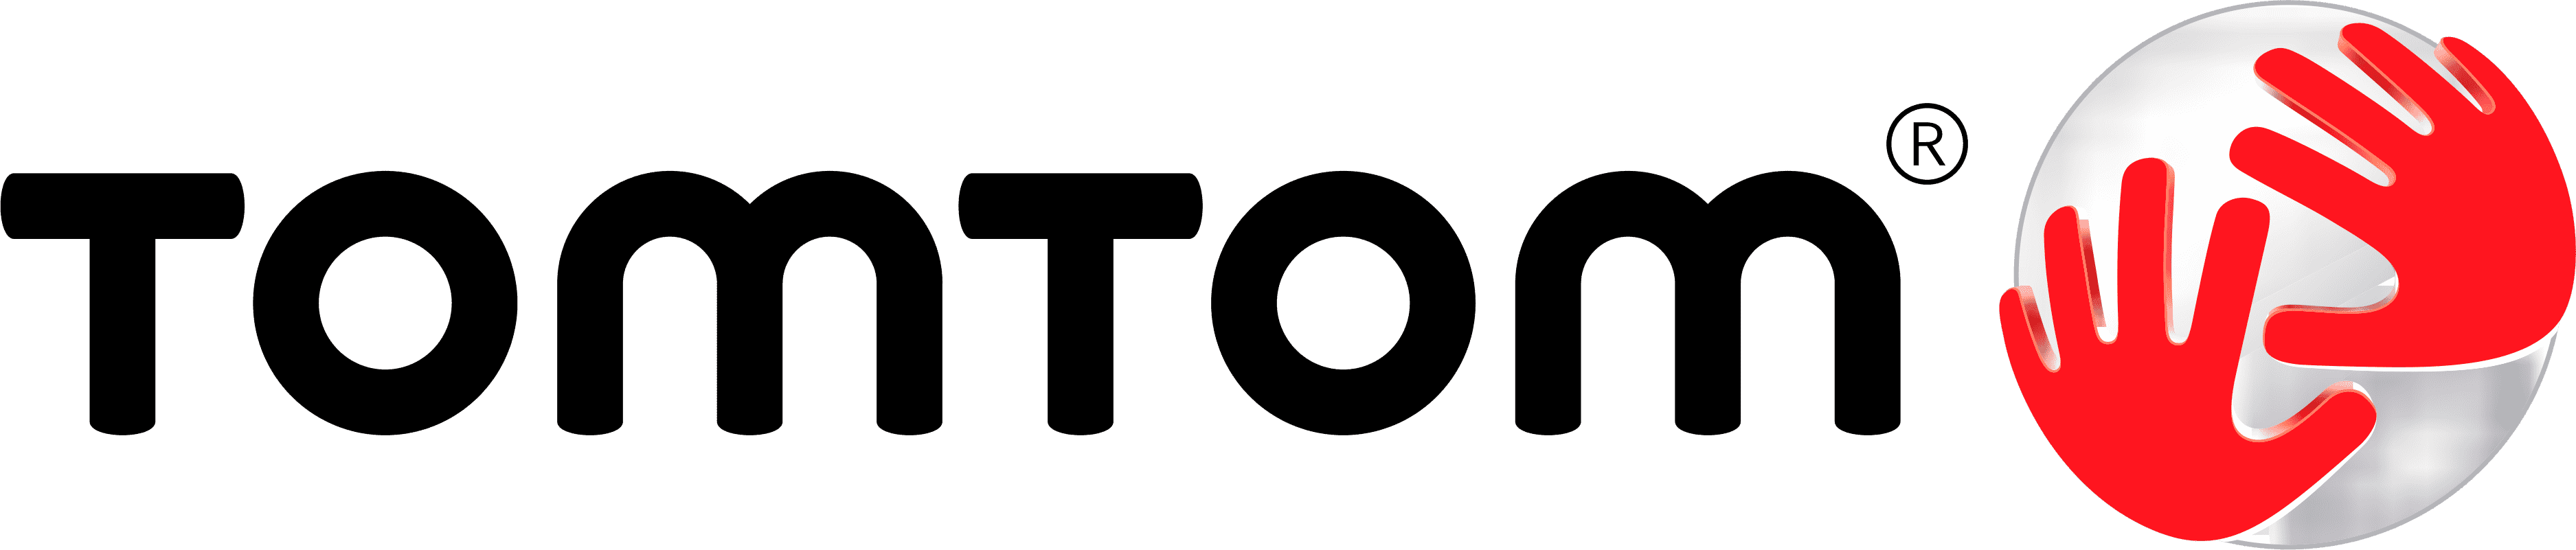 Logo TomTom | TeambuildingGuide - Originelle Ideen für ein erfolgreiches Teambuilding